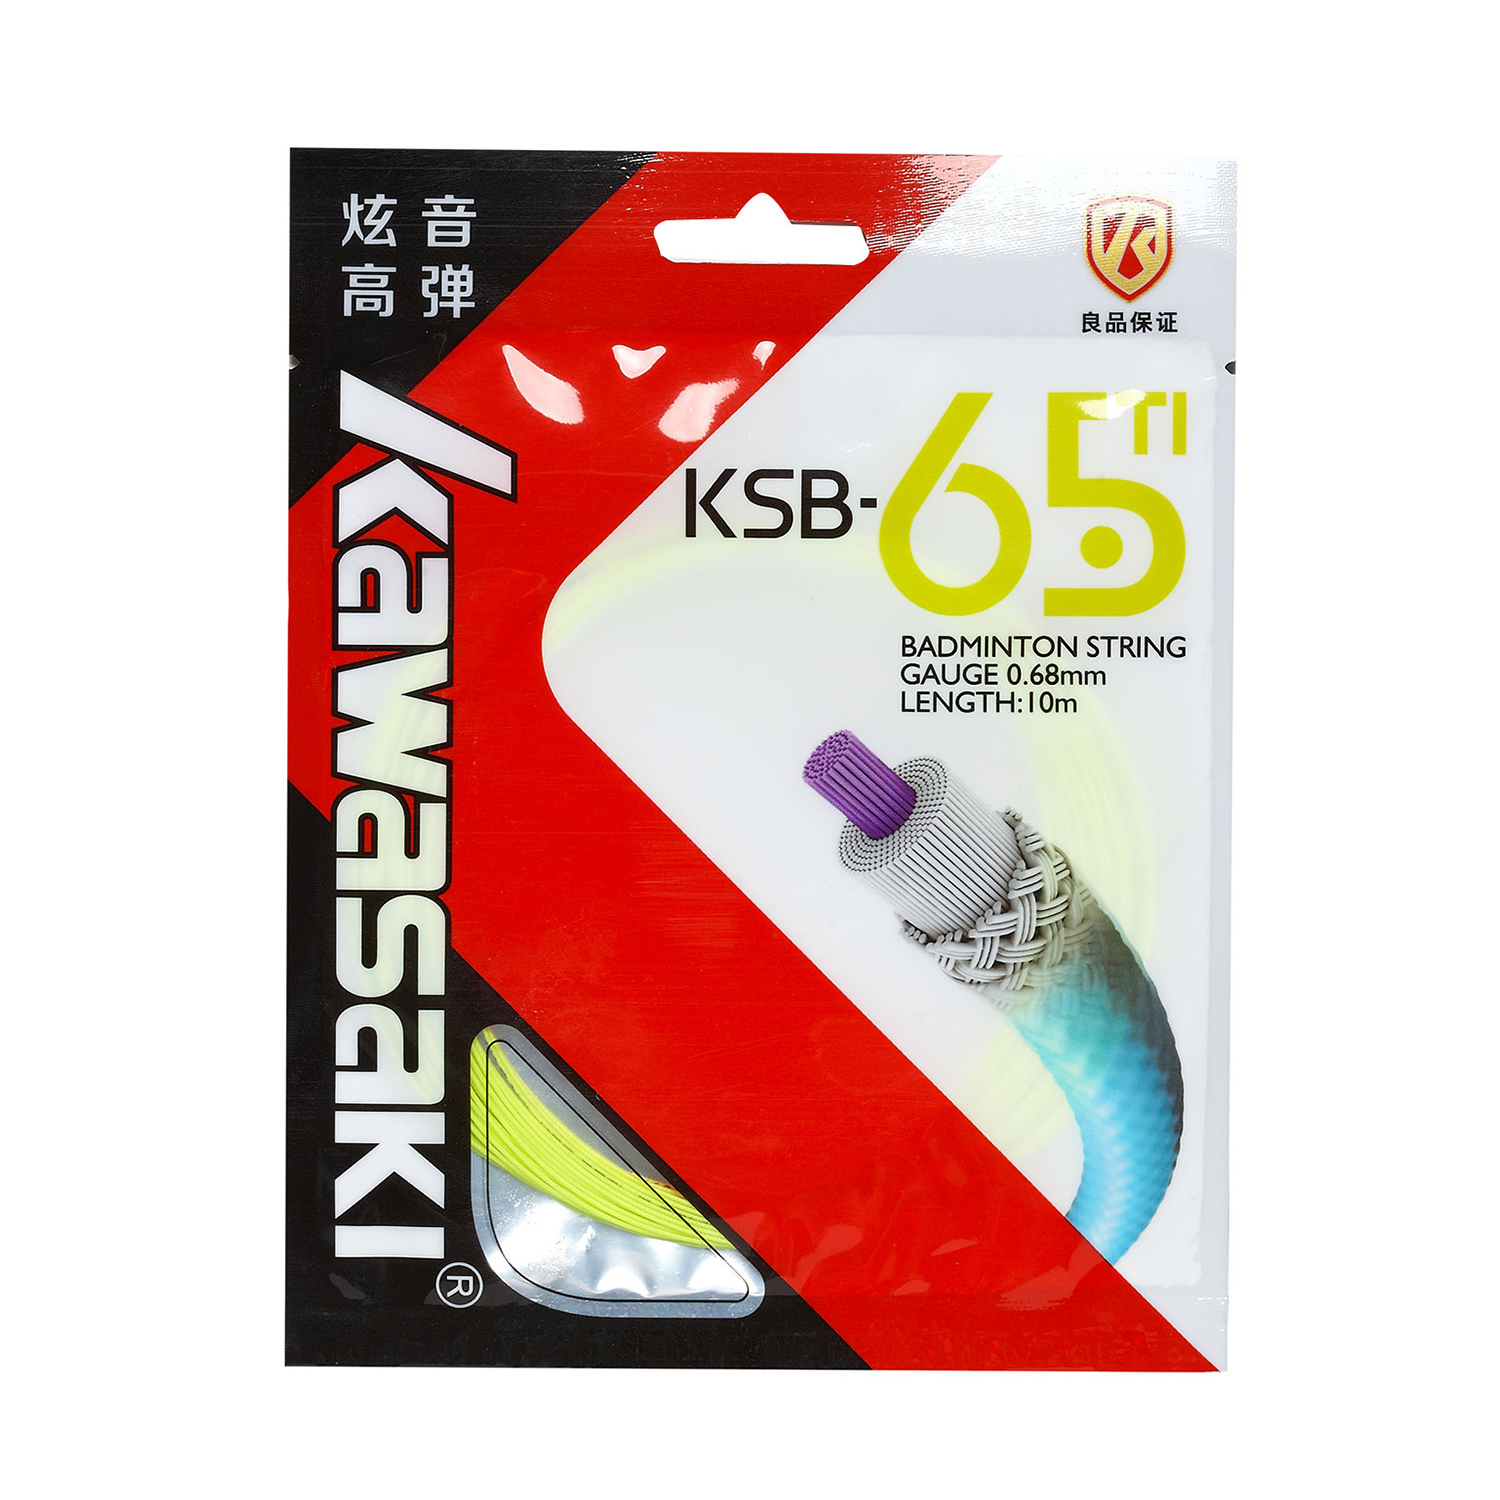 羽毛球线 KSB-65TI 荧光黄